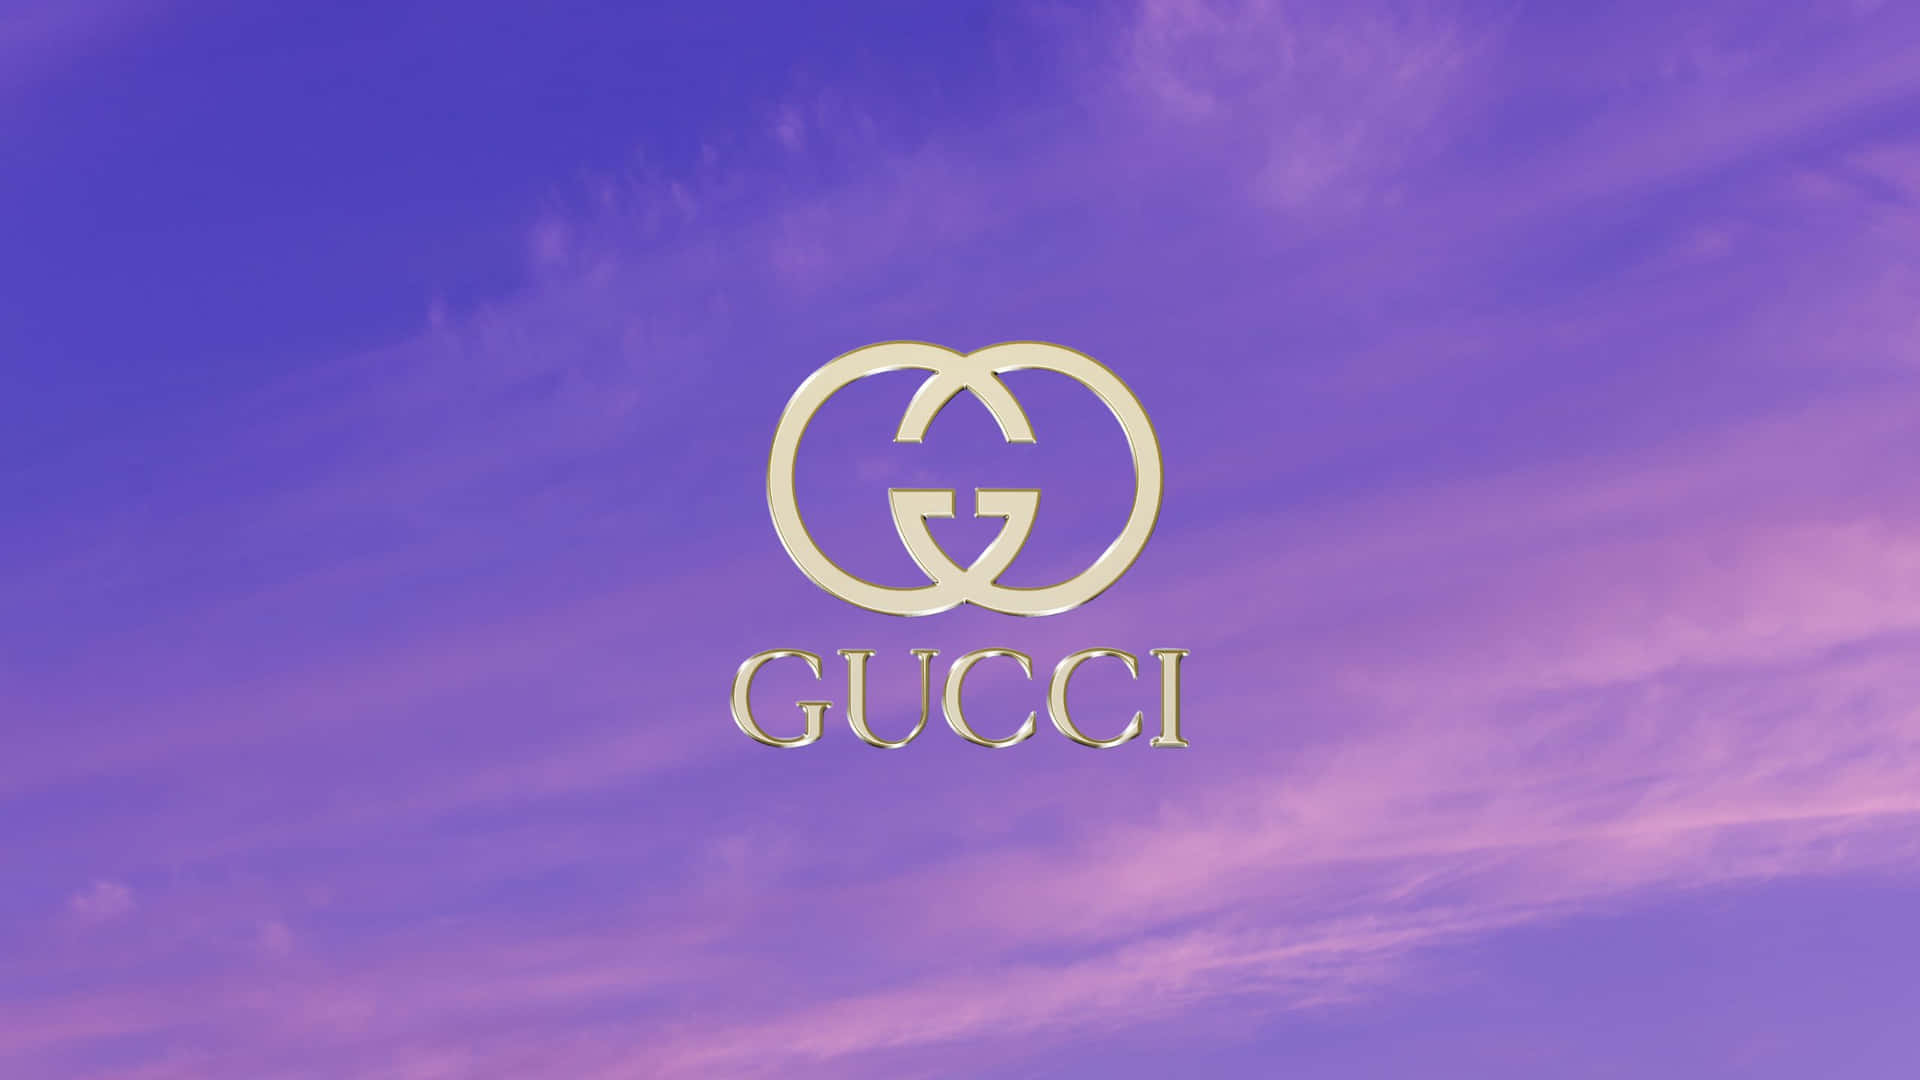 Logotipode Gucci En Un Cielo Púrpura Fondo de pantalla